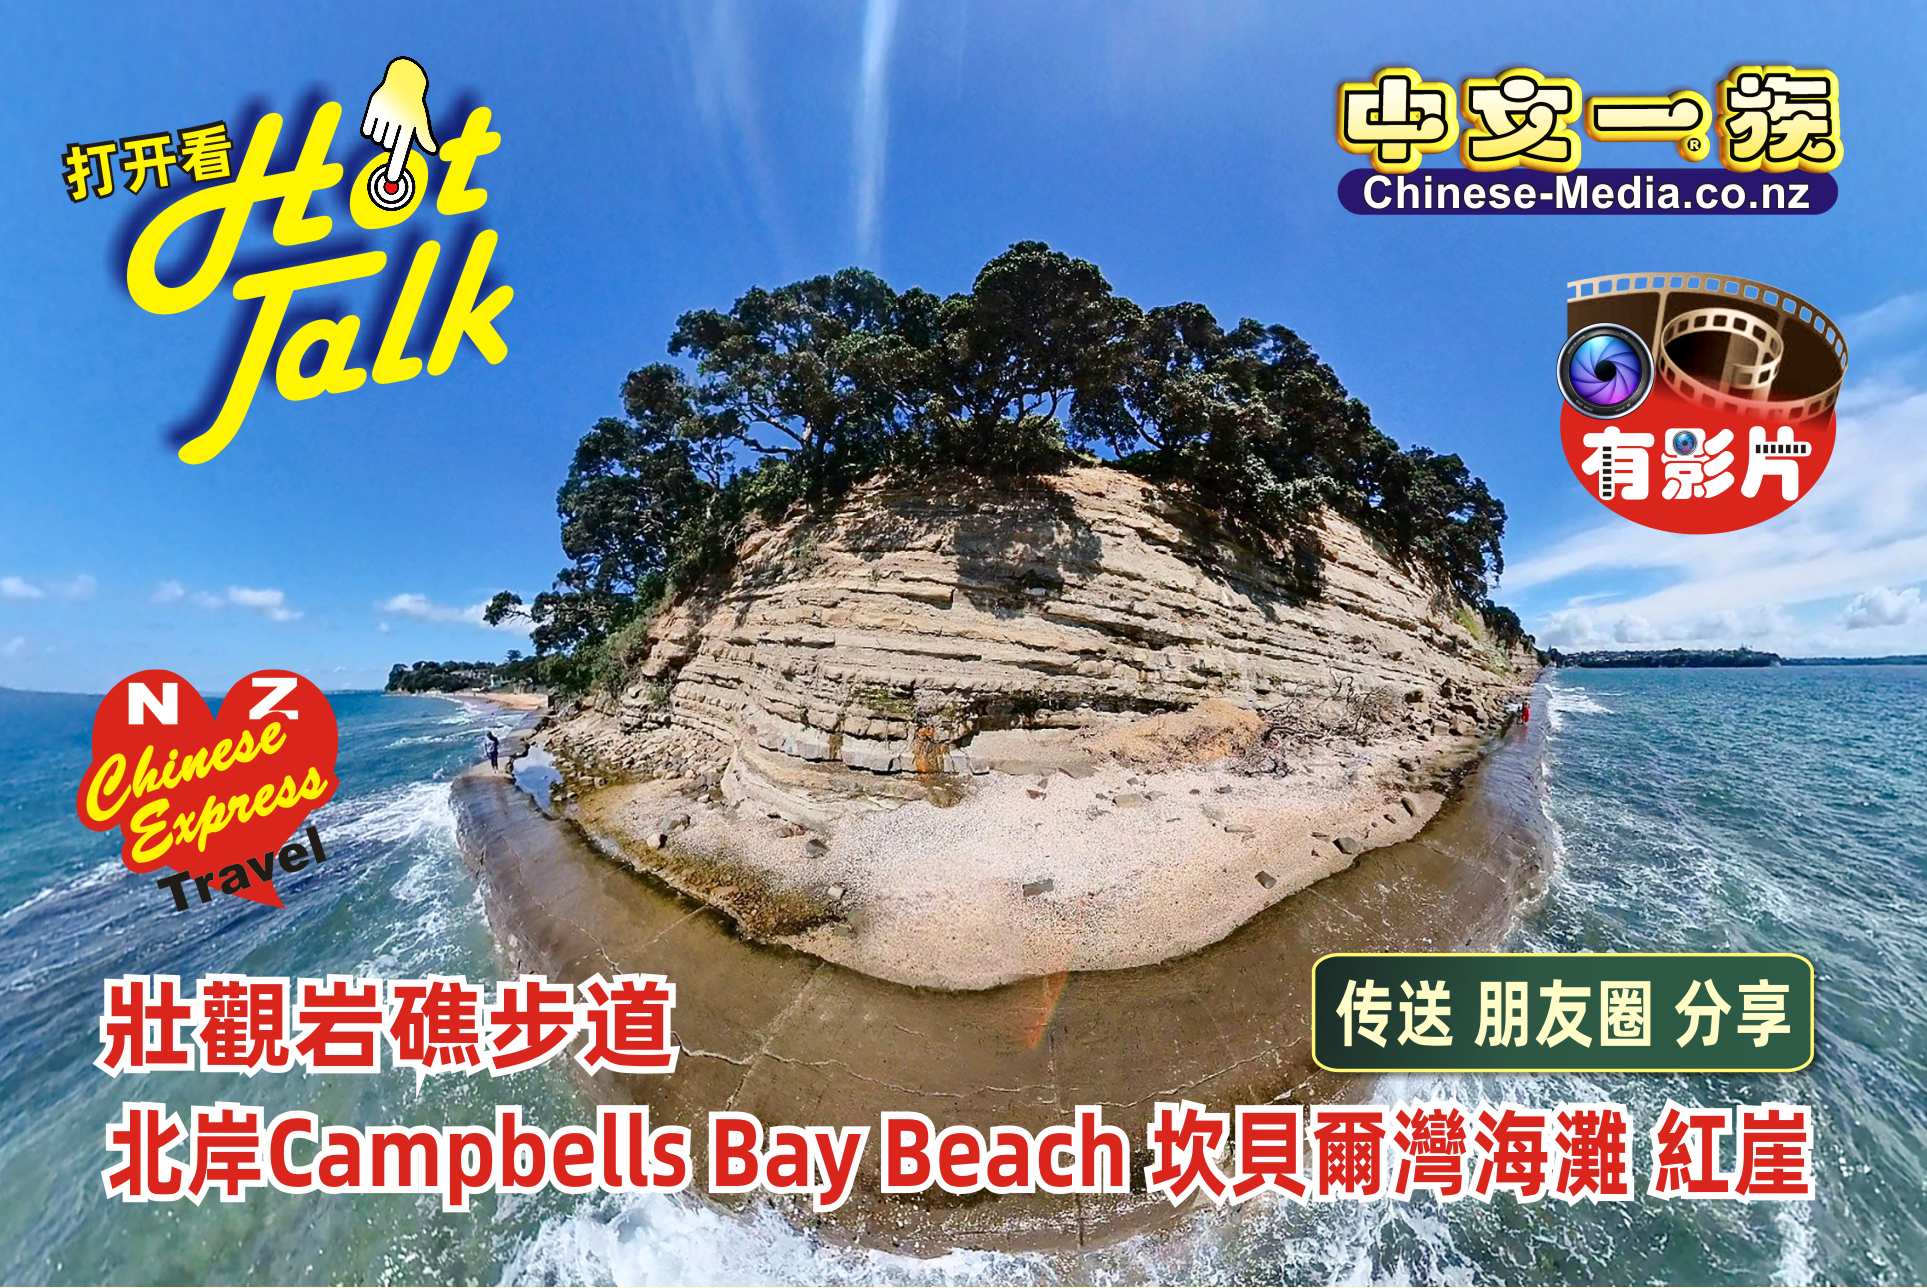 中文一族傳媒新聞快訊新西蘭旅遊景點